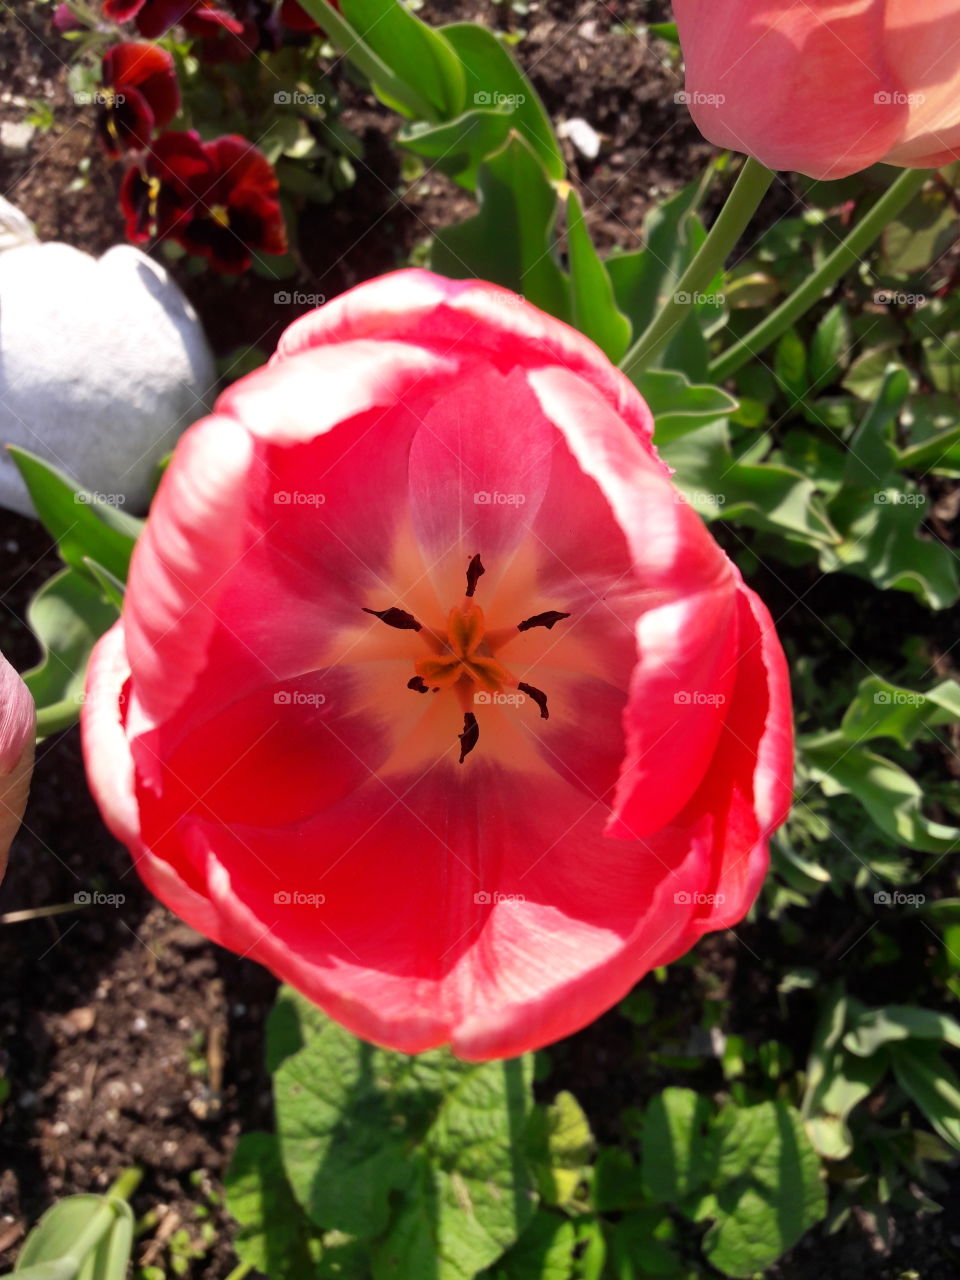 flower tulip